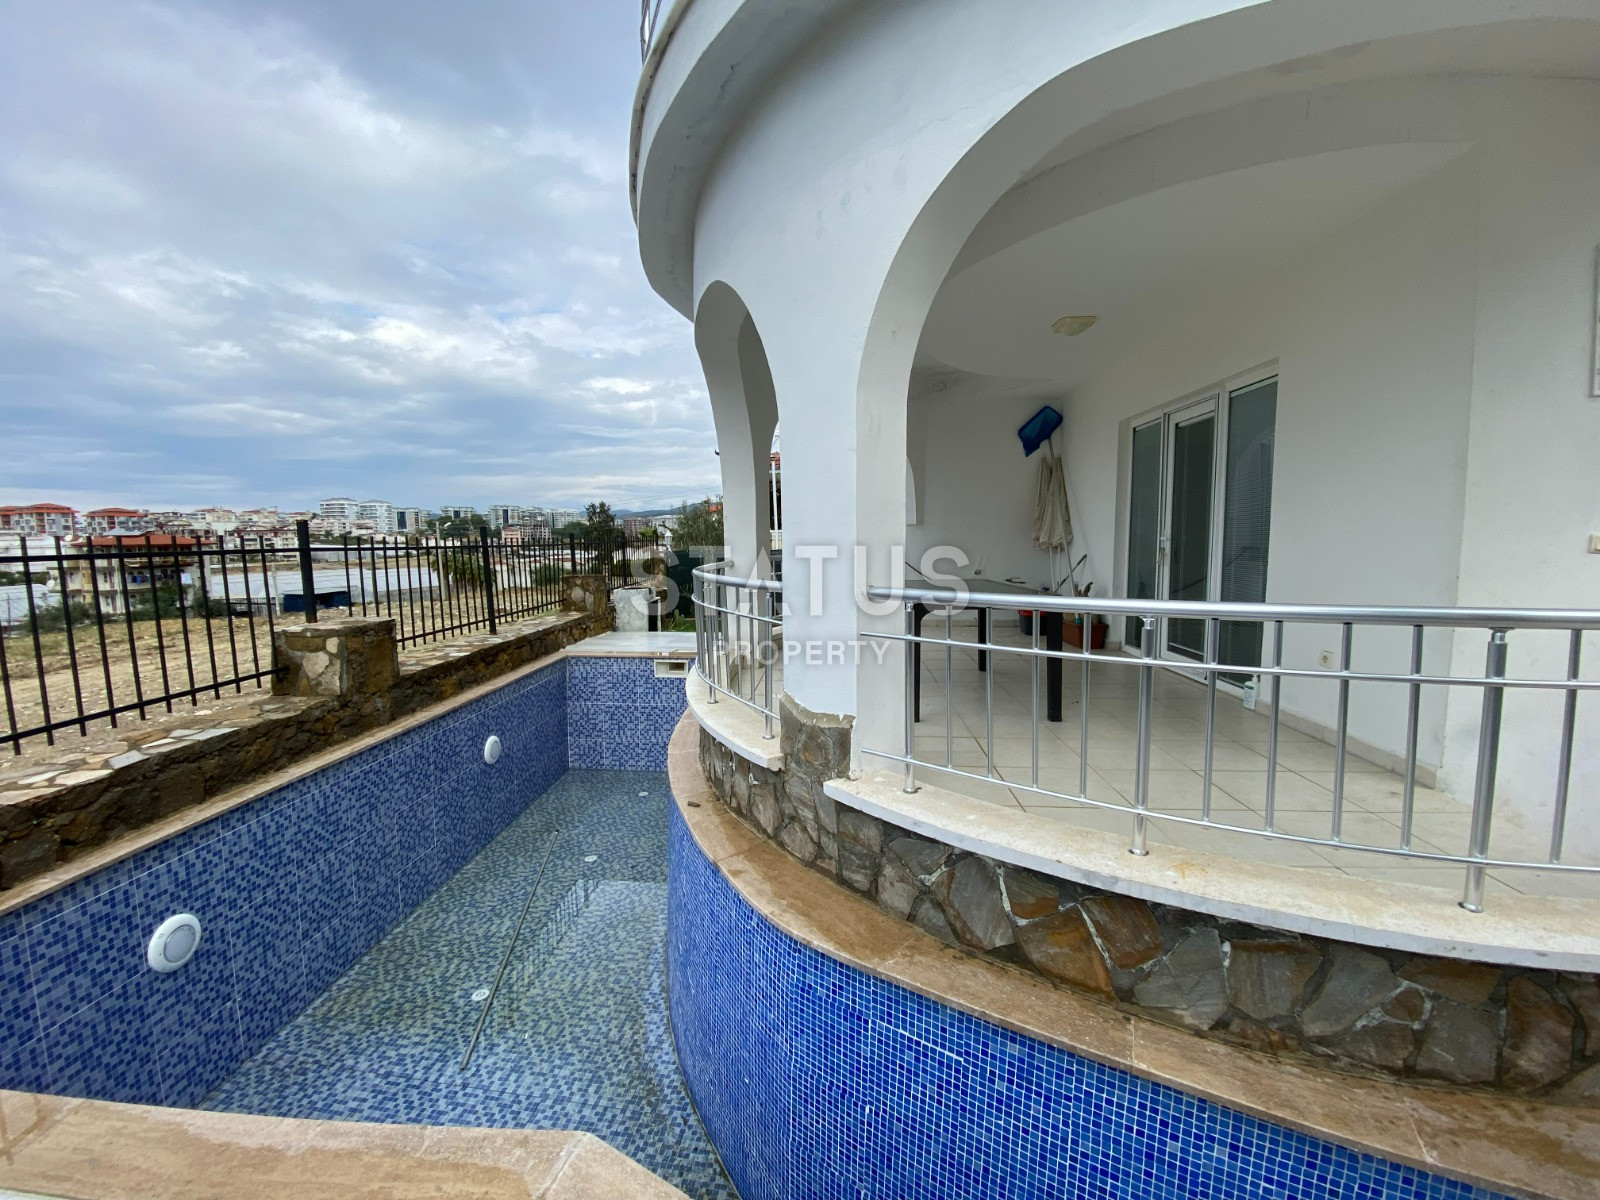 Villa with private pool in Avsallar area, 150 m2 фото 2